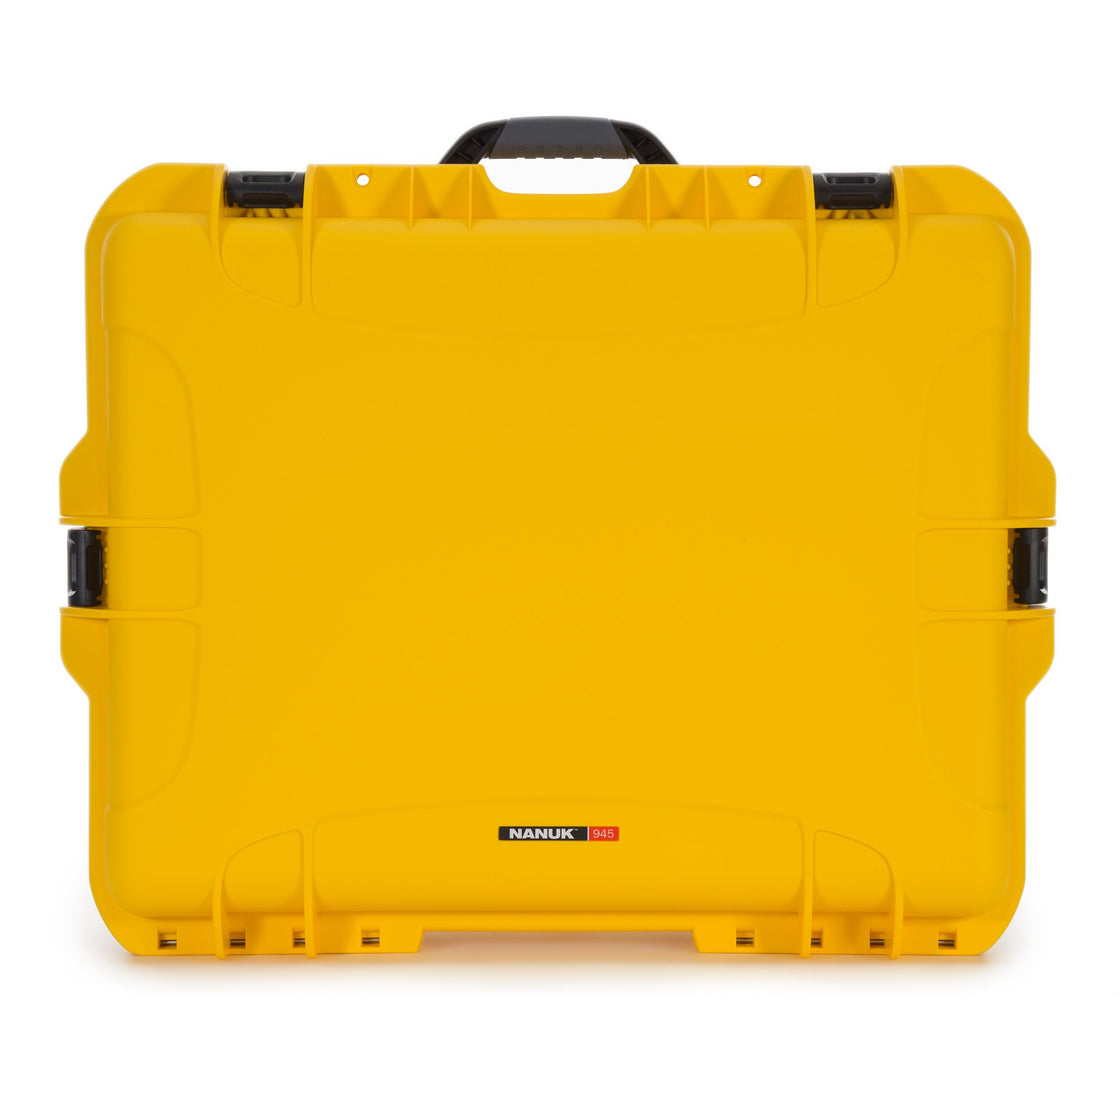 nanuk 938 waterproof hard case with wheels empty orange